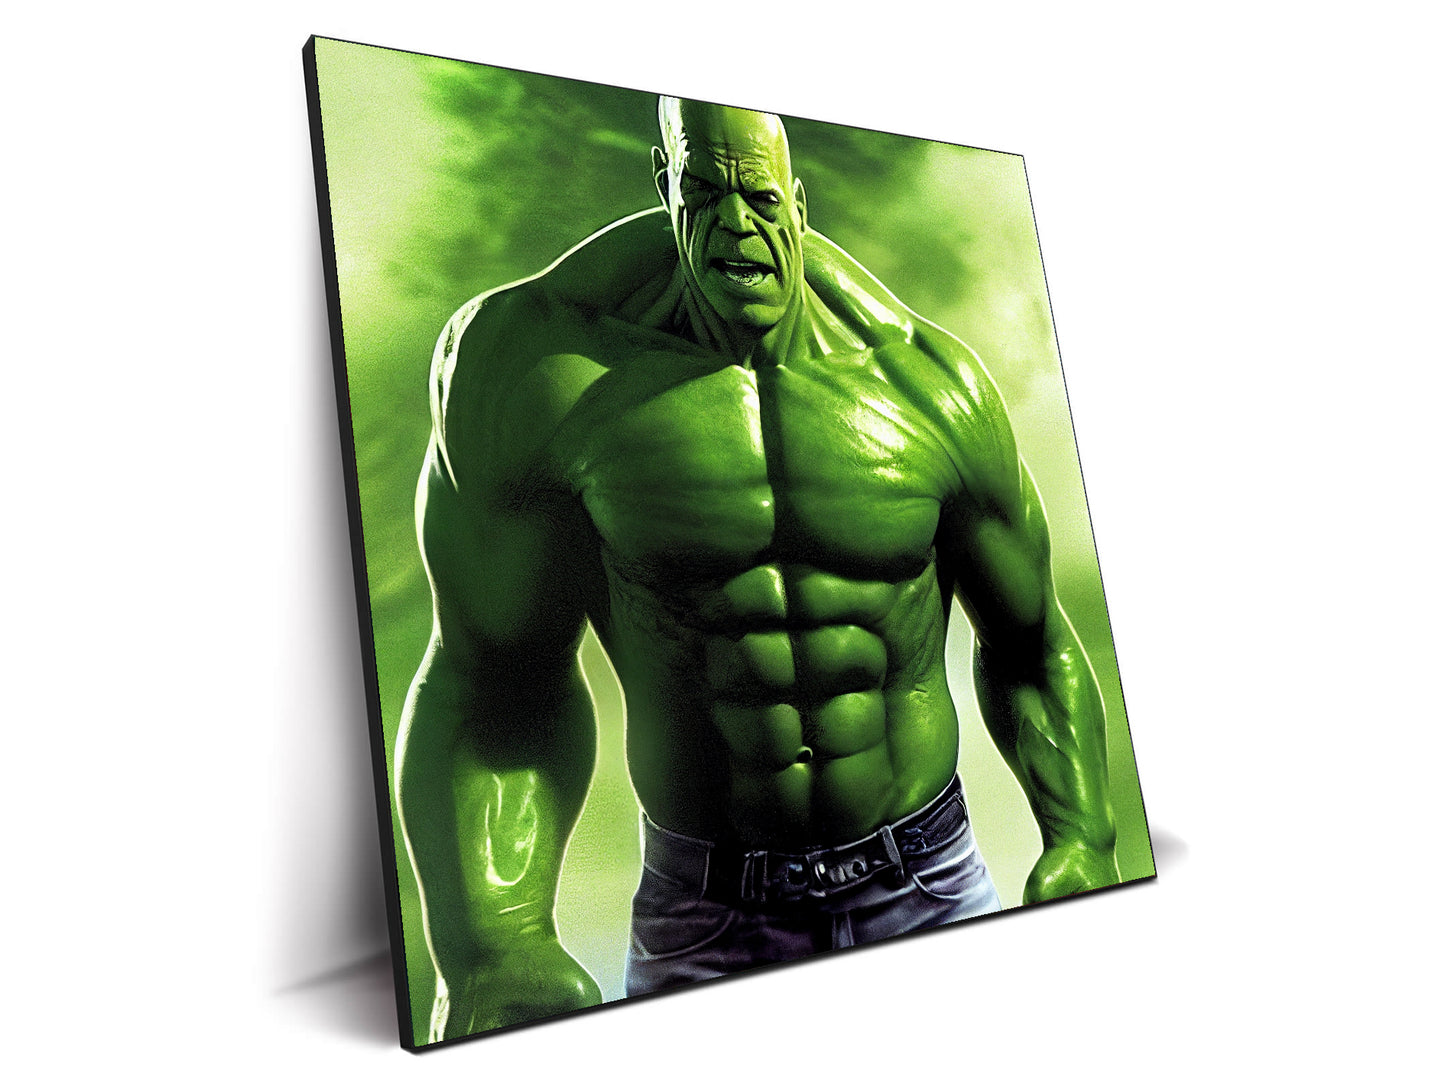 Thanos-Hulk